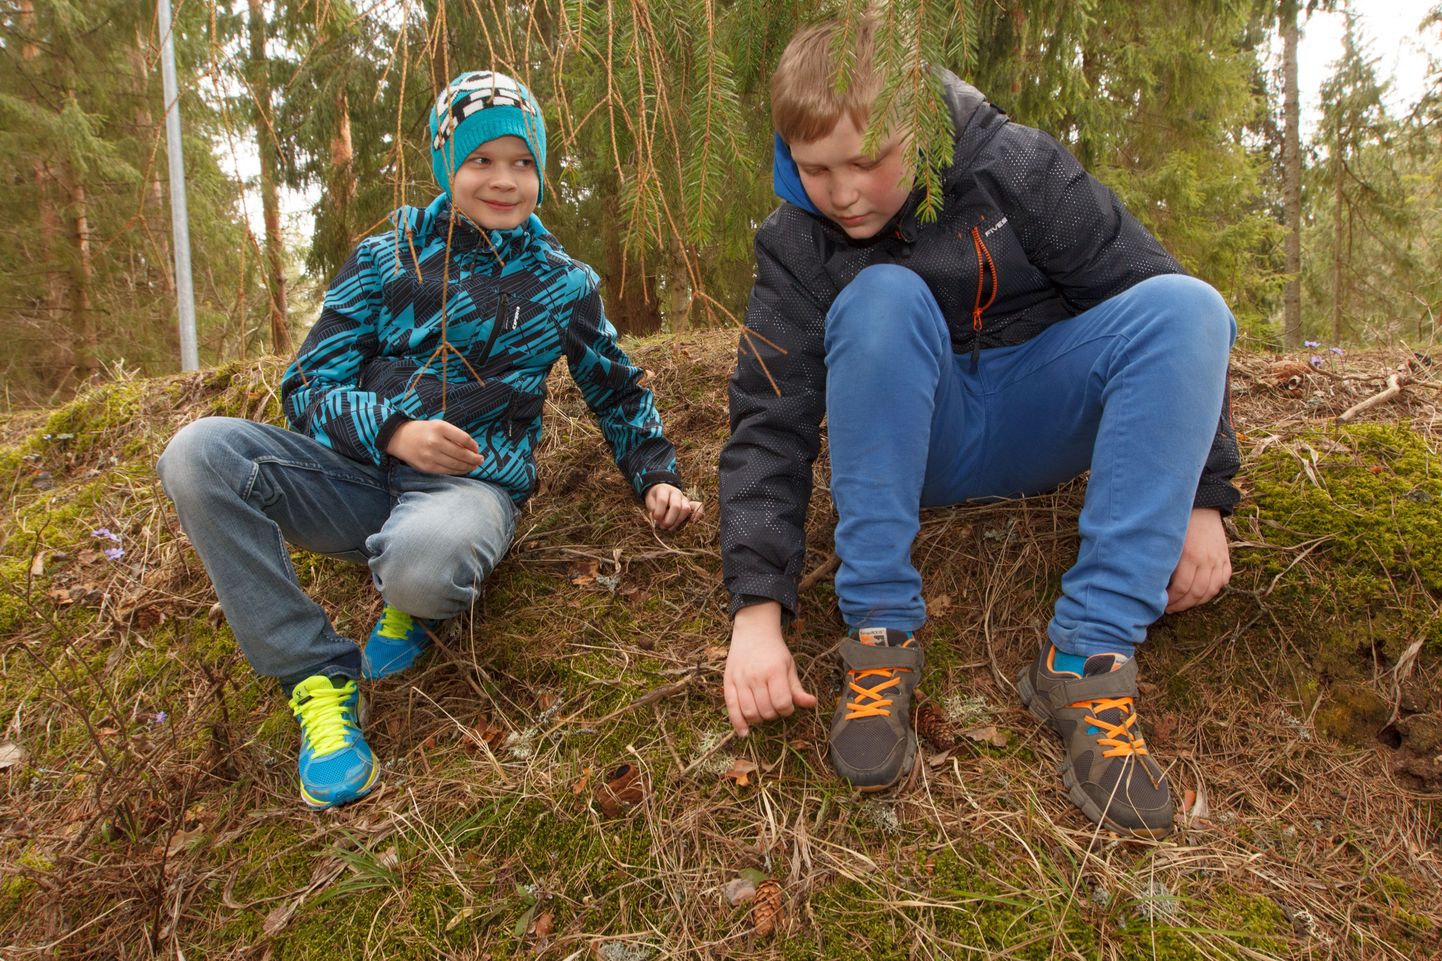 Kuigi Tõrva gümnaasiumi 4. klassi poisid Markus Põldma (vasakul) ja Andre Asi enda sõnul loodusteadlasteks hakata ei plaani, läheb haruldaste seente käekäik neile vägagi korda. Pildilgi on nad seenele mõlemalt poolt kaitset pakkumas.